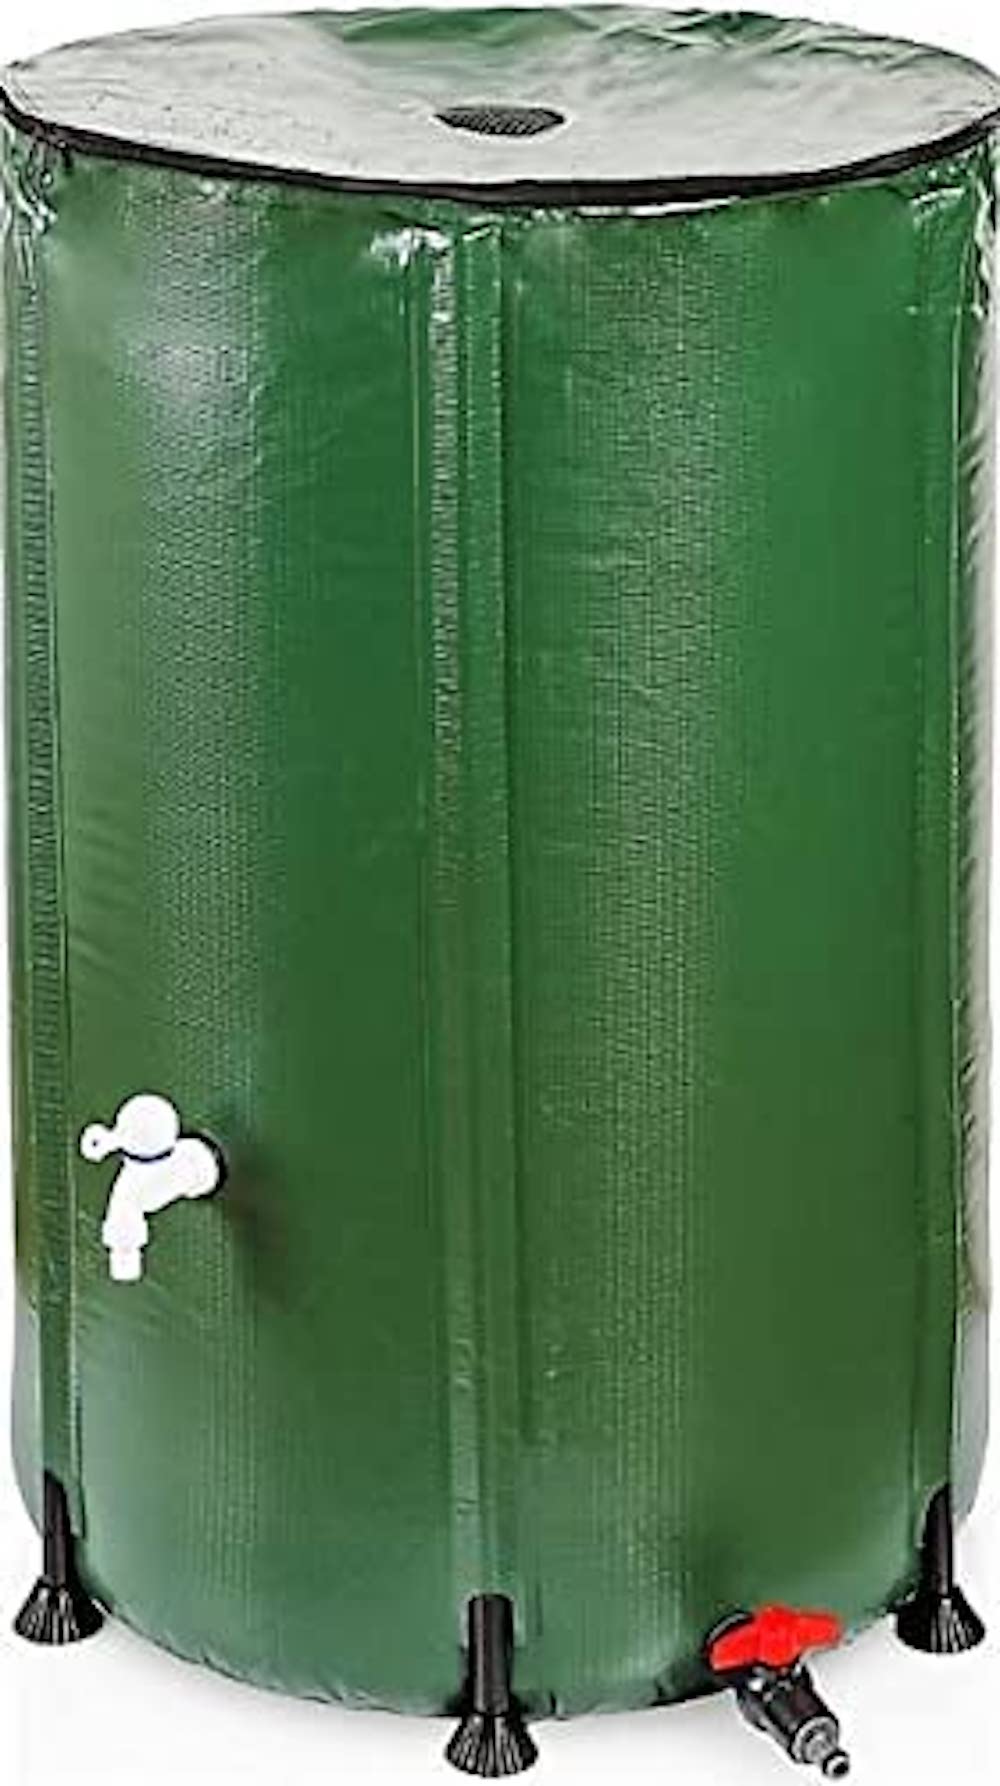 RENATA Faltbare grüne Regentonne aus UV-stabilem PVC, 500 Liter Volumen, inkl. Filter & Schlauchschnelladapter, Tonne, Regentonne, Mehrzweckfass, Kunststoffbehälter, Wassertank